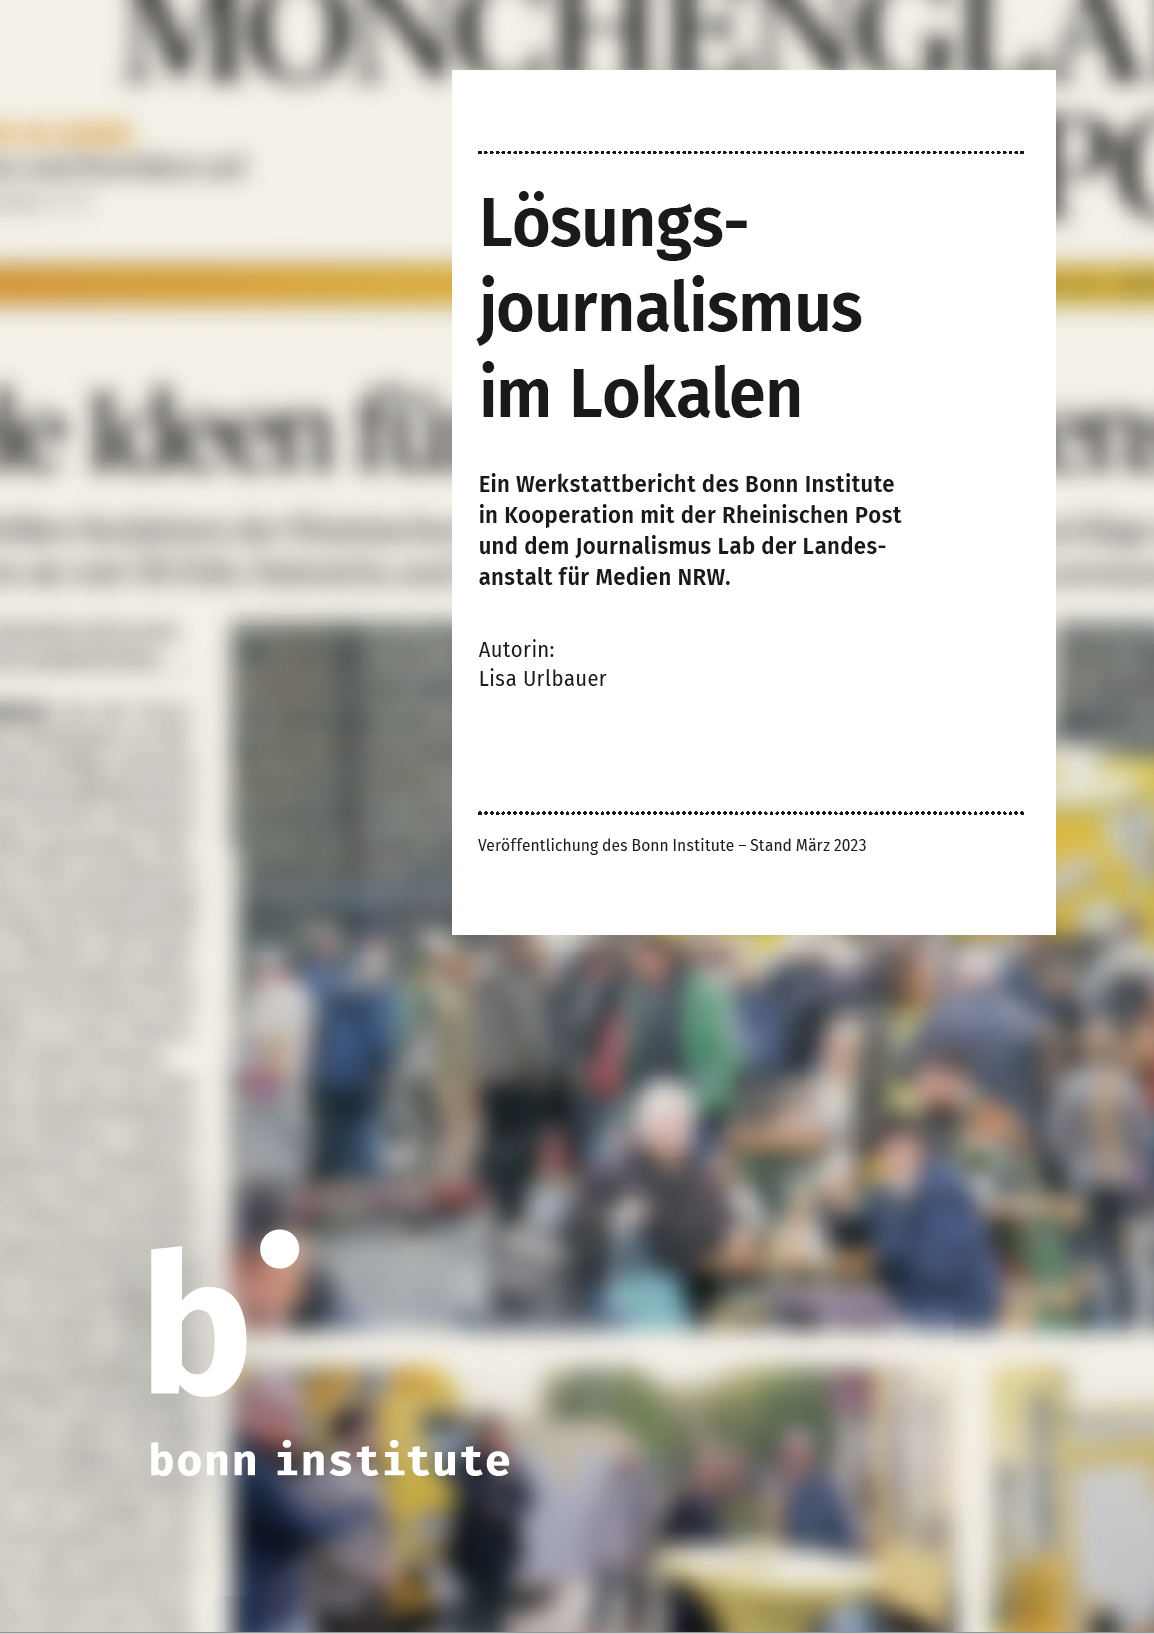 Ein Screenshot von dem Titel des Werkstattberichts "Lösungsjournalismus im Lokalen"